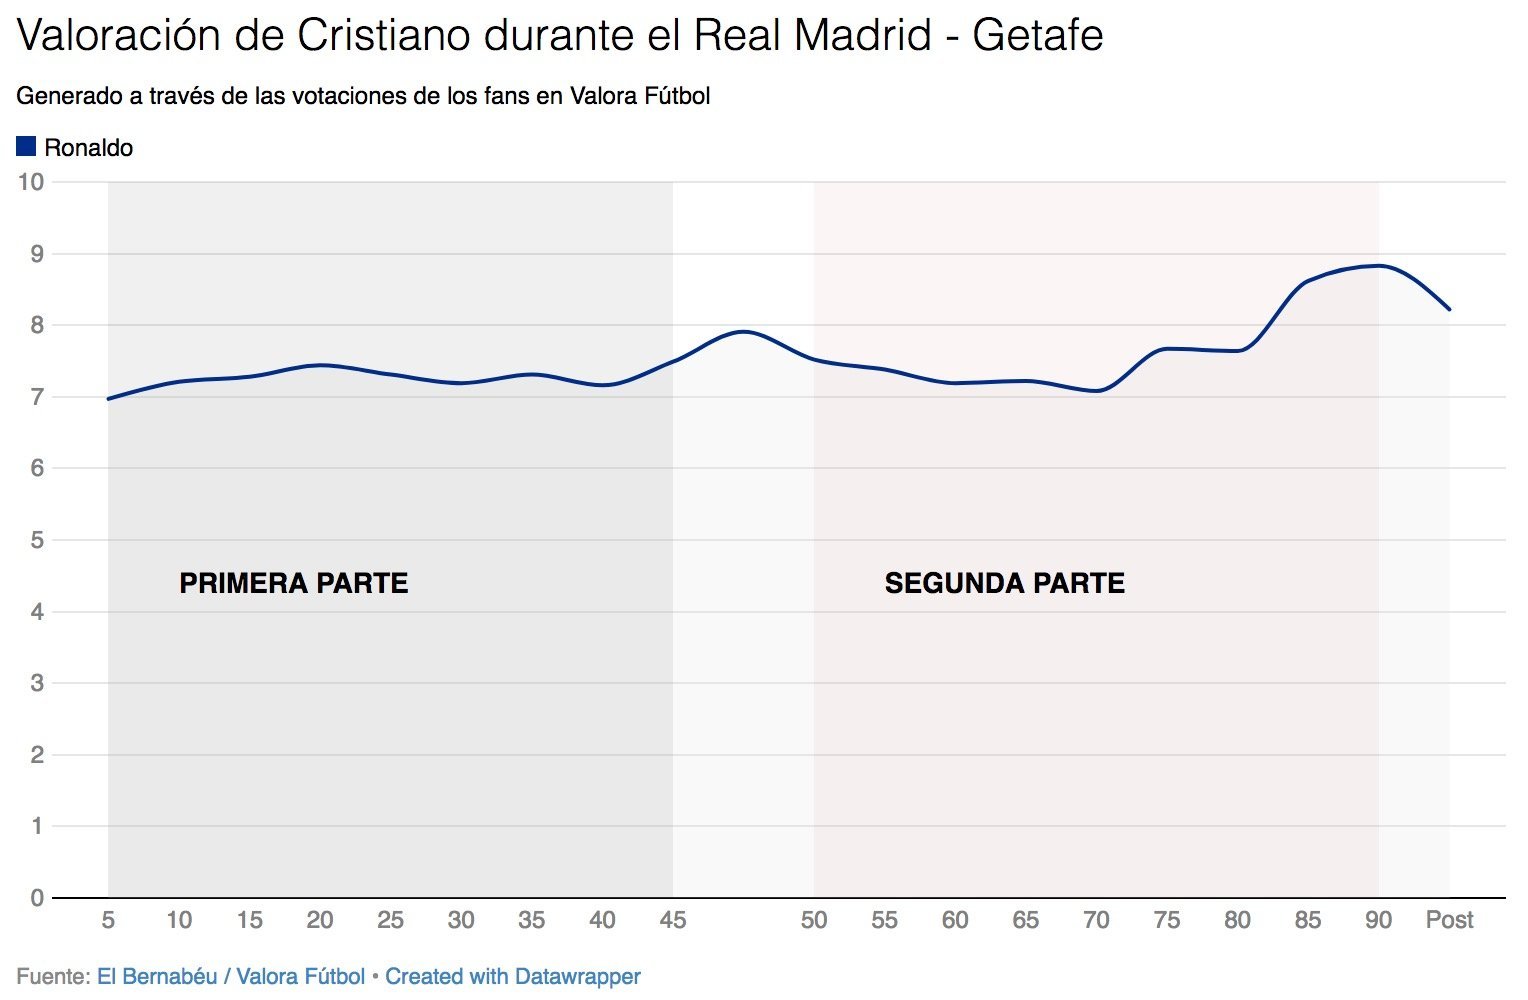 Así votaron los usuarios de Valora Fútbol a Cristiano Ronaldo durante el Real Madrid - Getafe